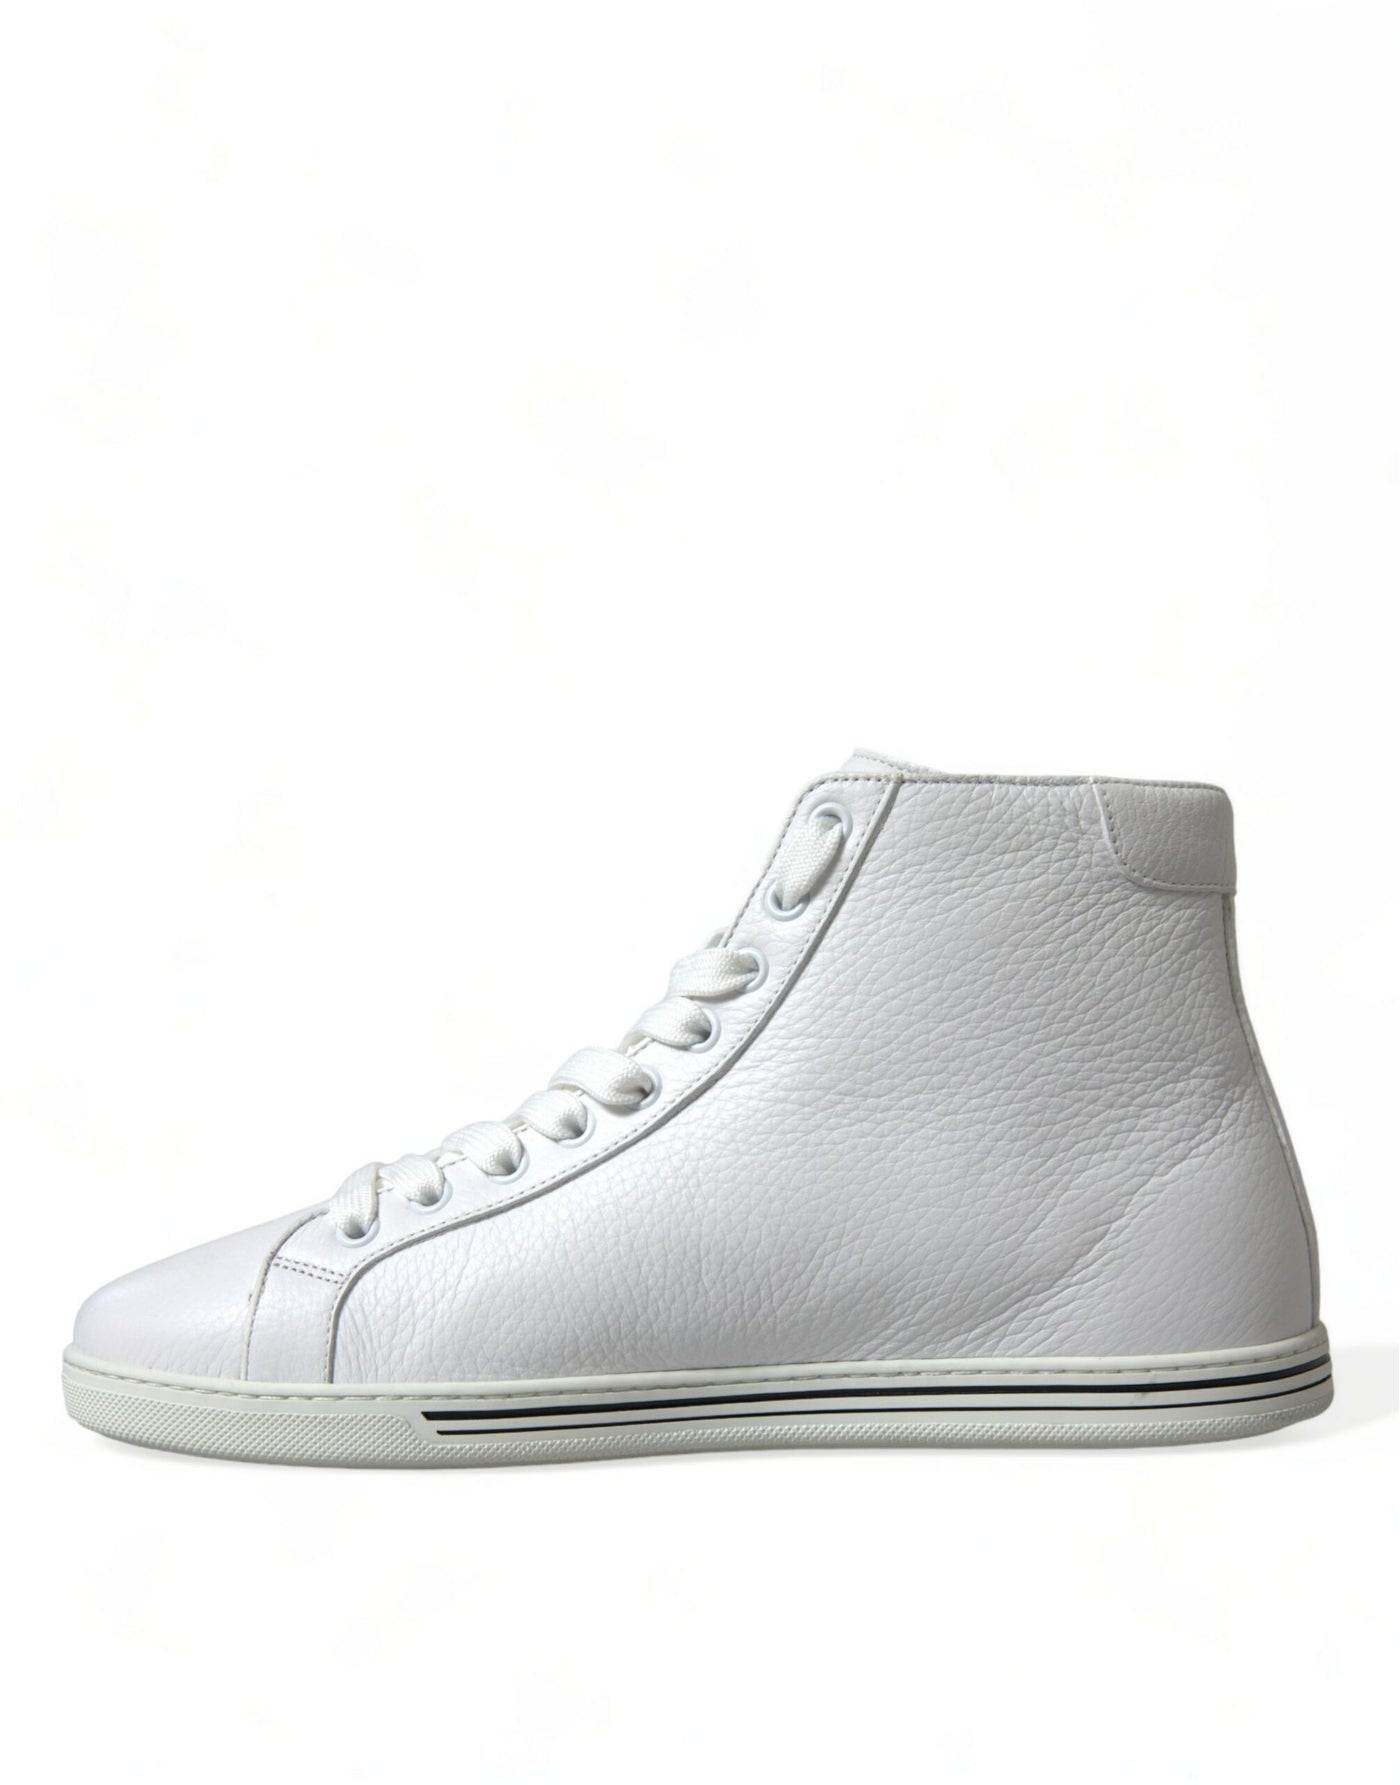 Dolce & Gabbana White Saint Tropez High Top Men Sneakers Shoes